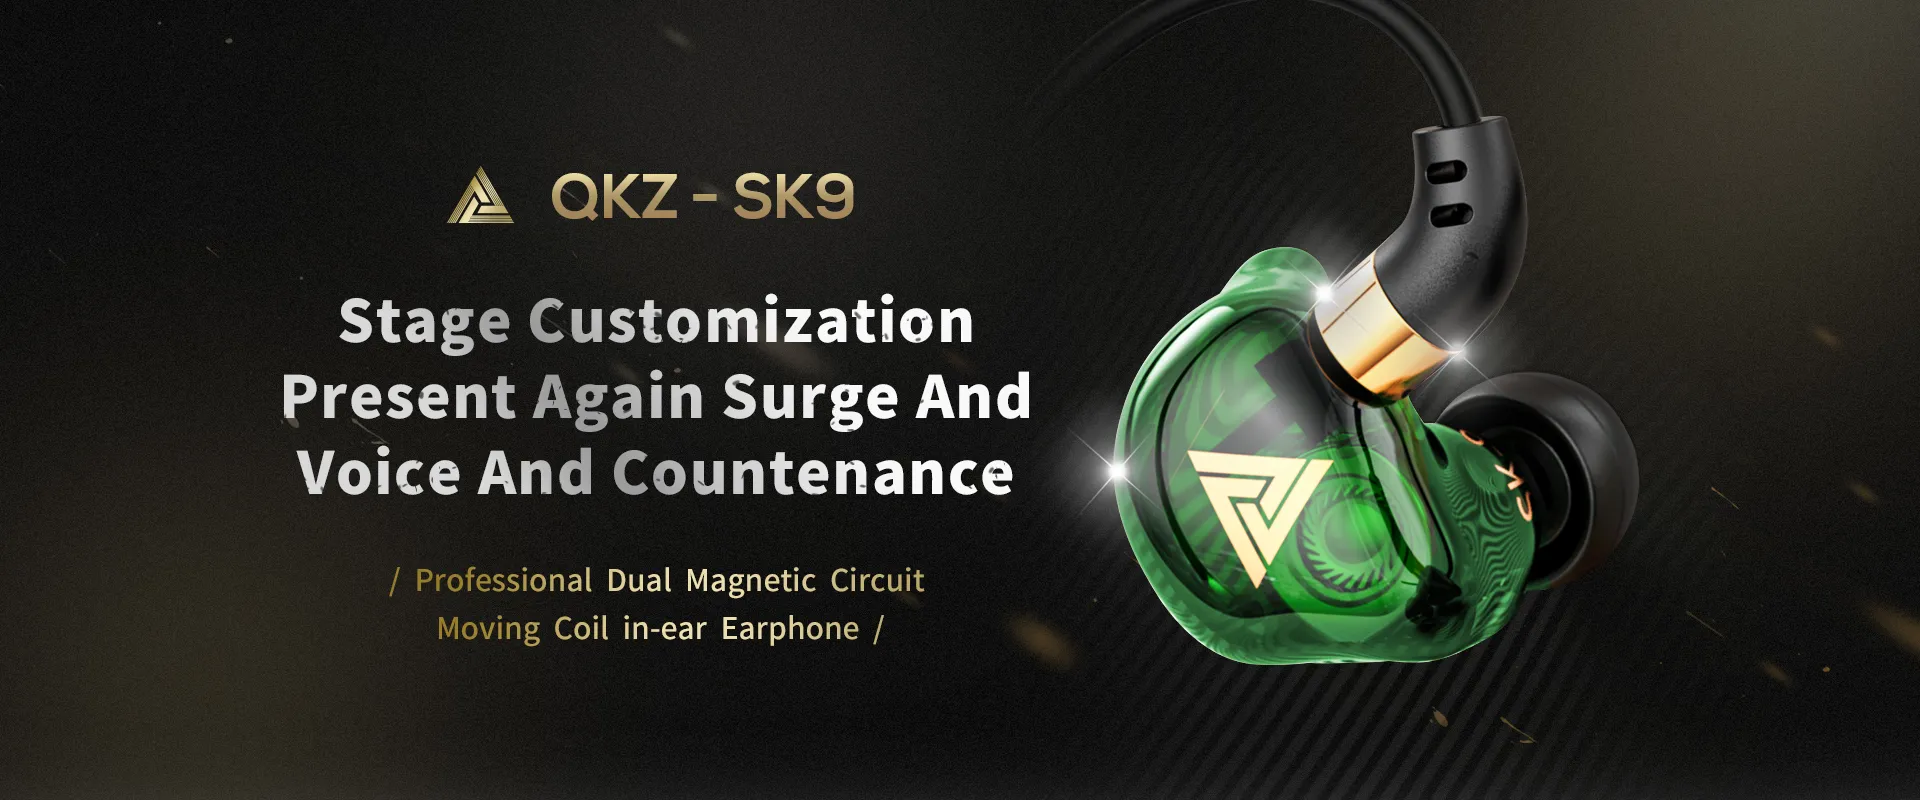 オリジナルQKZ AK6銅ドライバーHIFI有線イヤホンスポーツランニングヘッドフォンベースステレオヘッドセットミュージックイヤホンFONE DE OUVIDO3415136